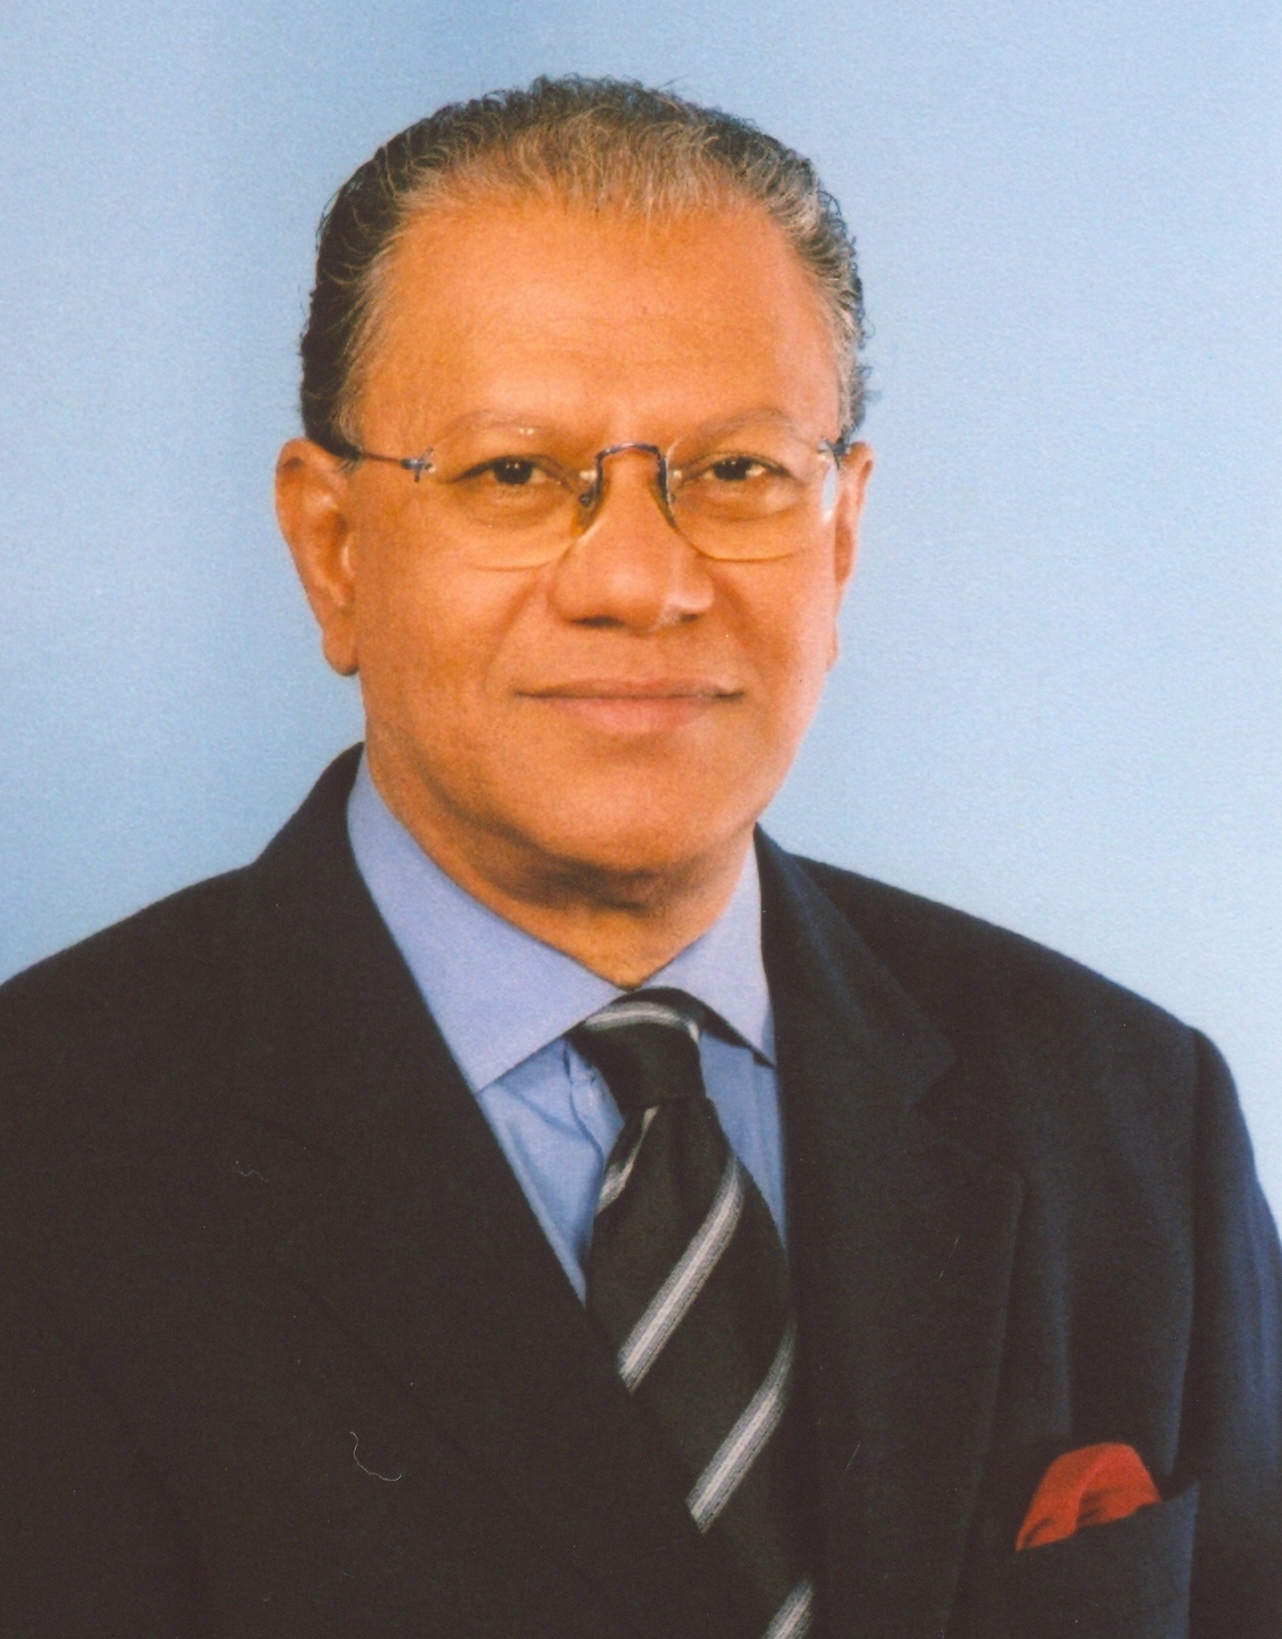 Mauritius Prime Minister